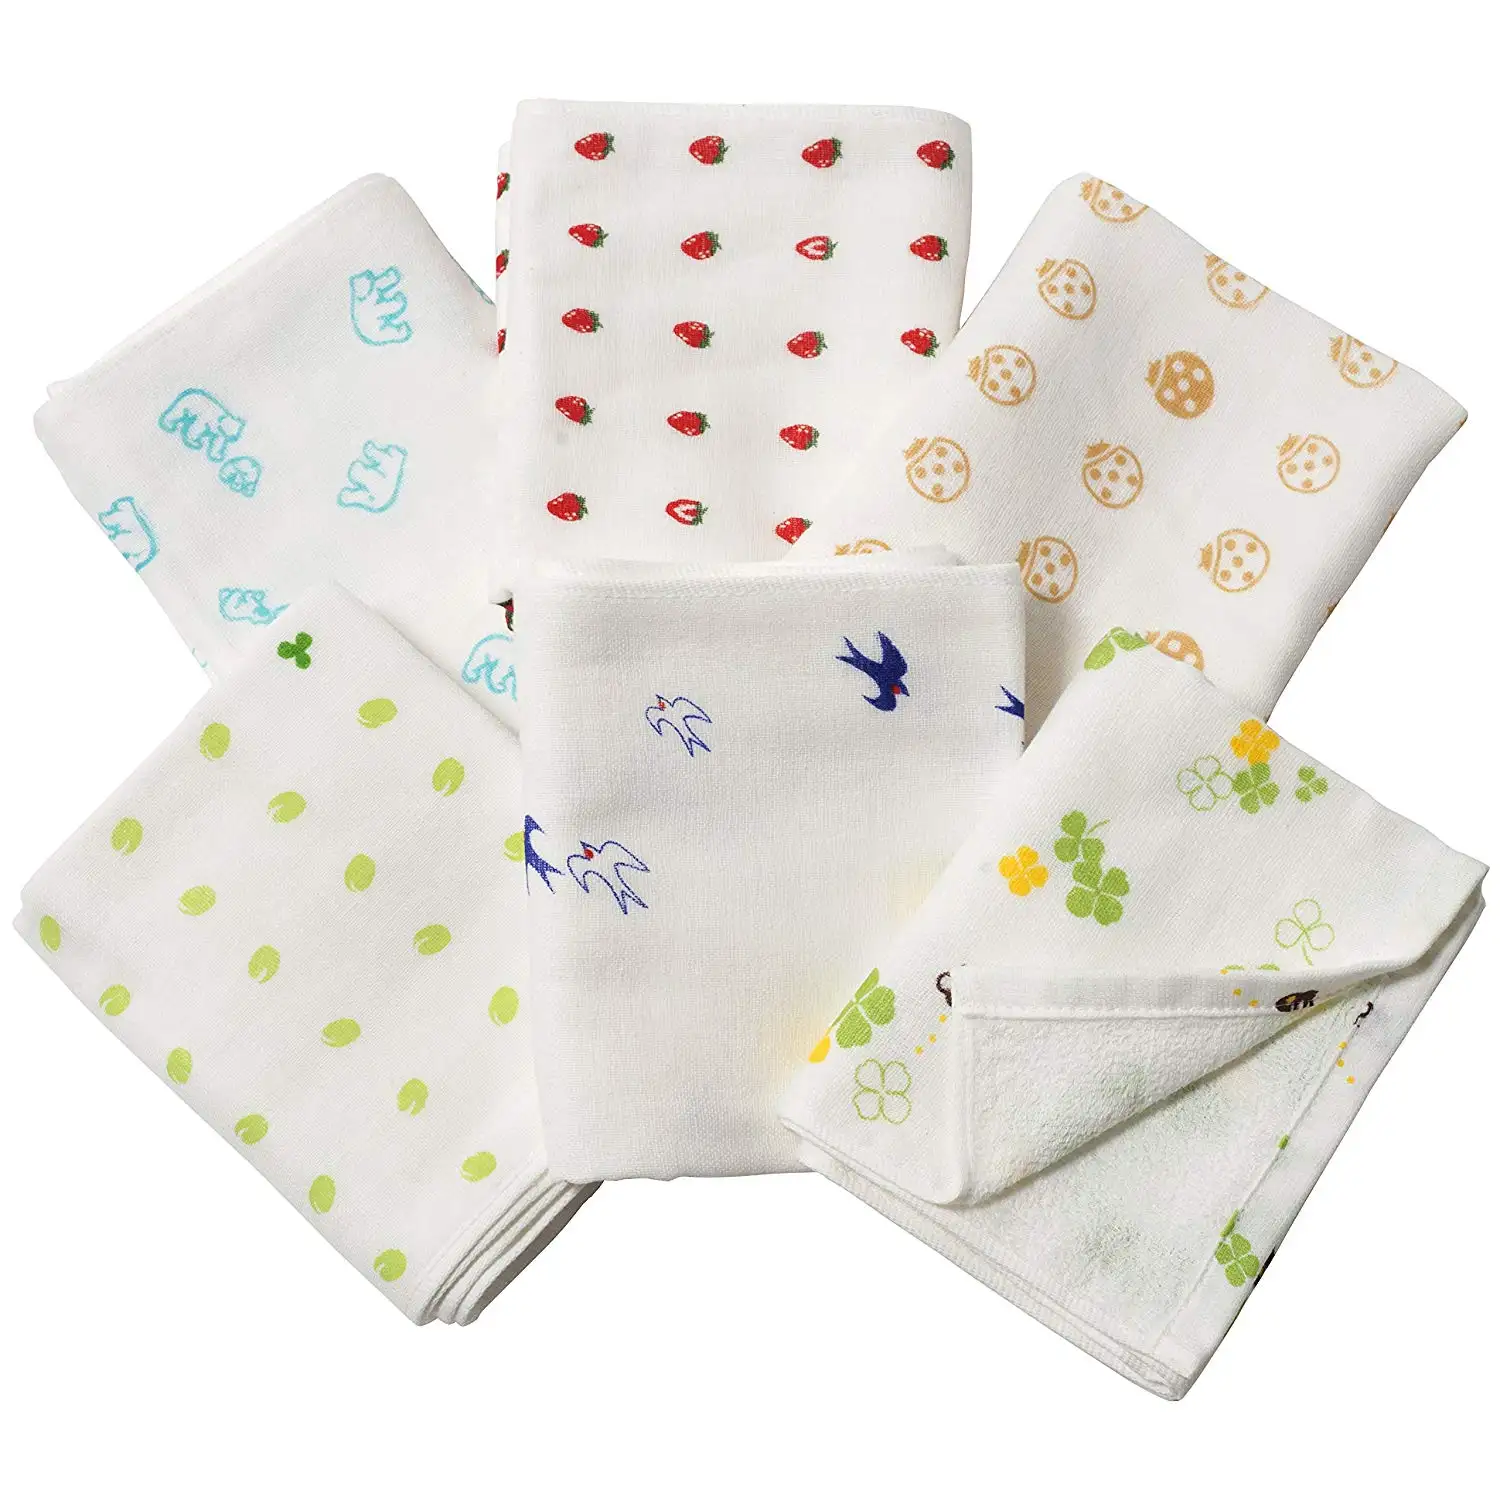 [Wholesale Products] Osaka Japan Printed Gauze Towel 100% Cotton Face Towel 34cm*34cm Bath Original Design Cute Soft Low MOQ